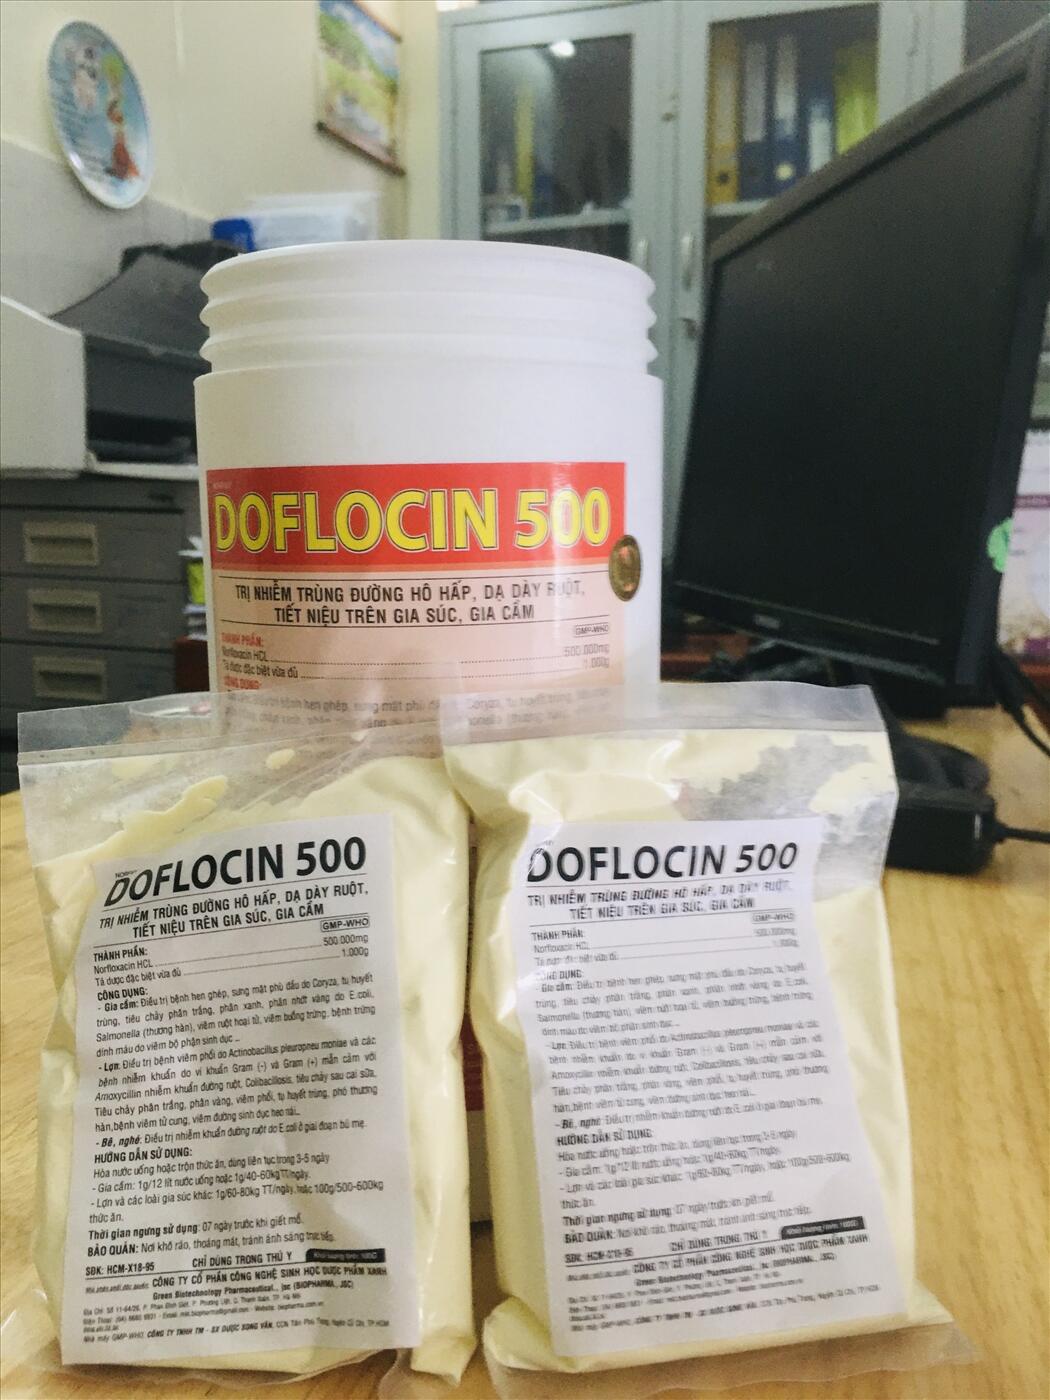 DOFLOCIN 500